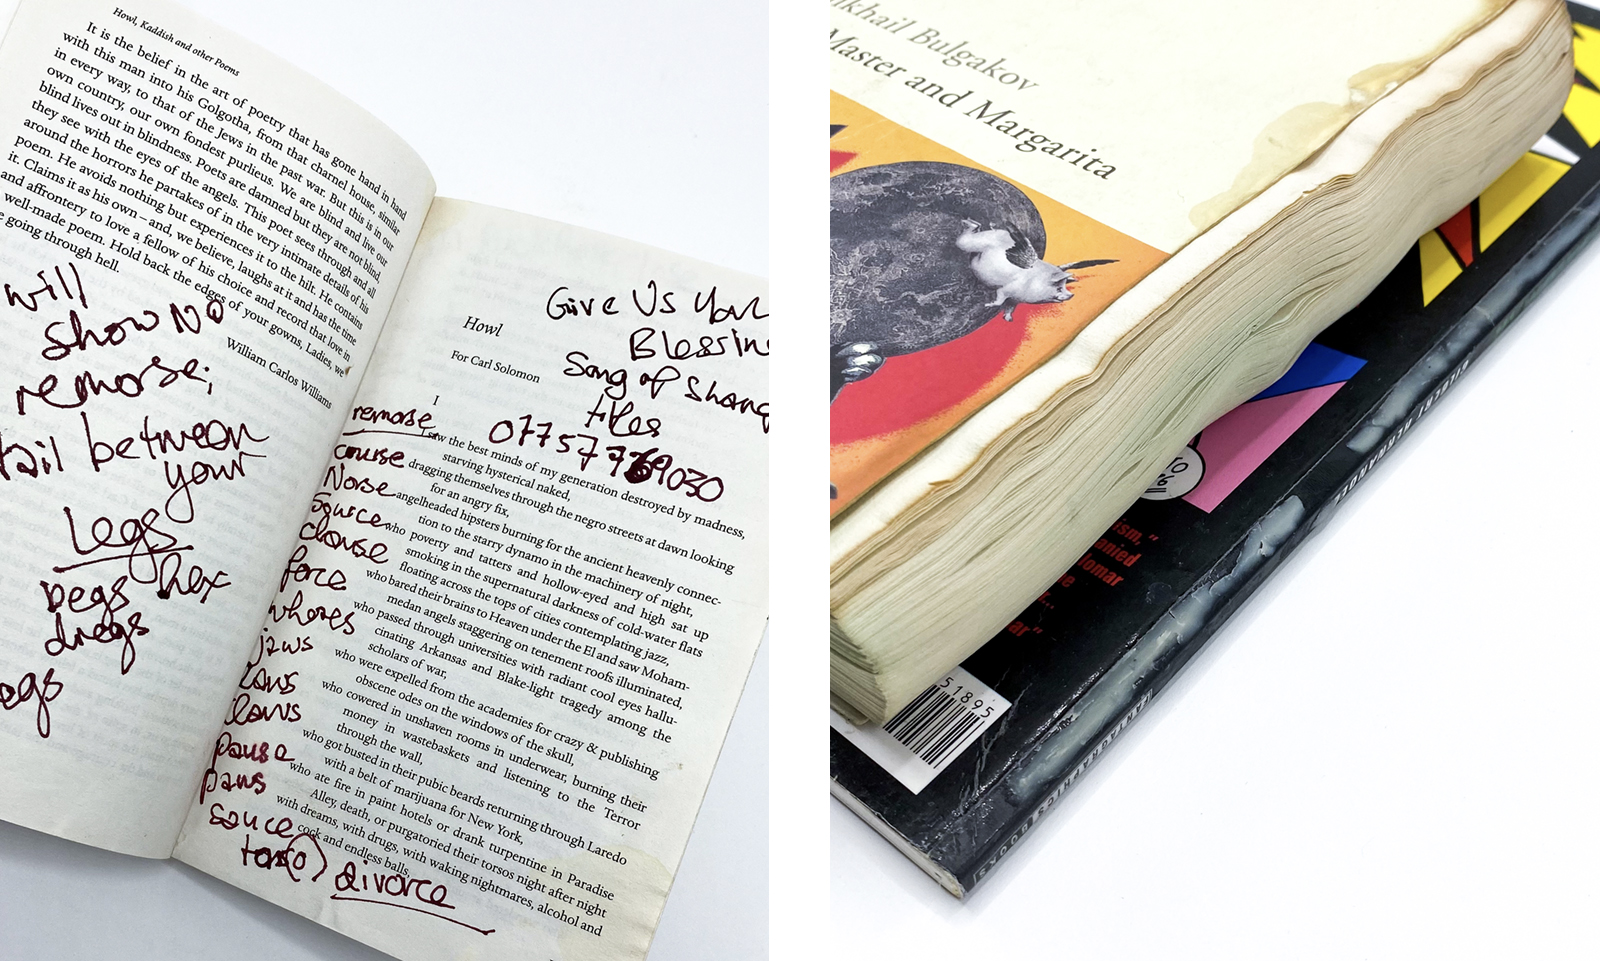 Detail of Winehouse's books